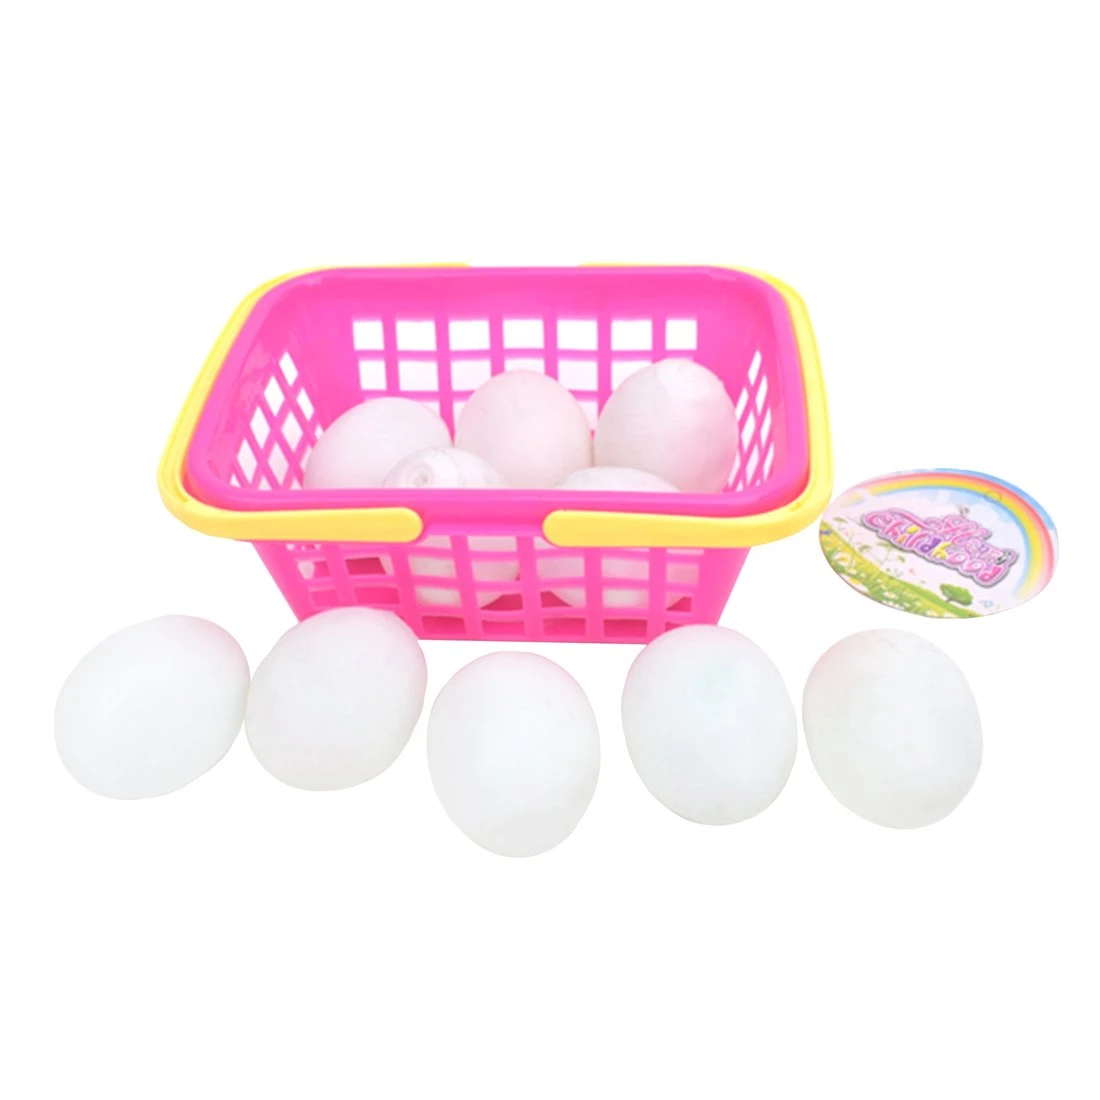 Игровой набор Продукты - яйца 10шт в корзине